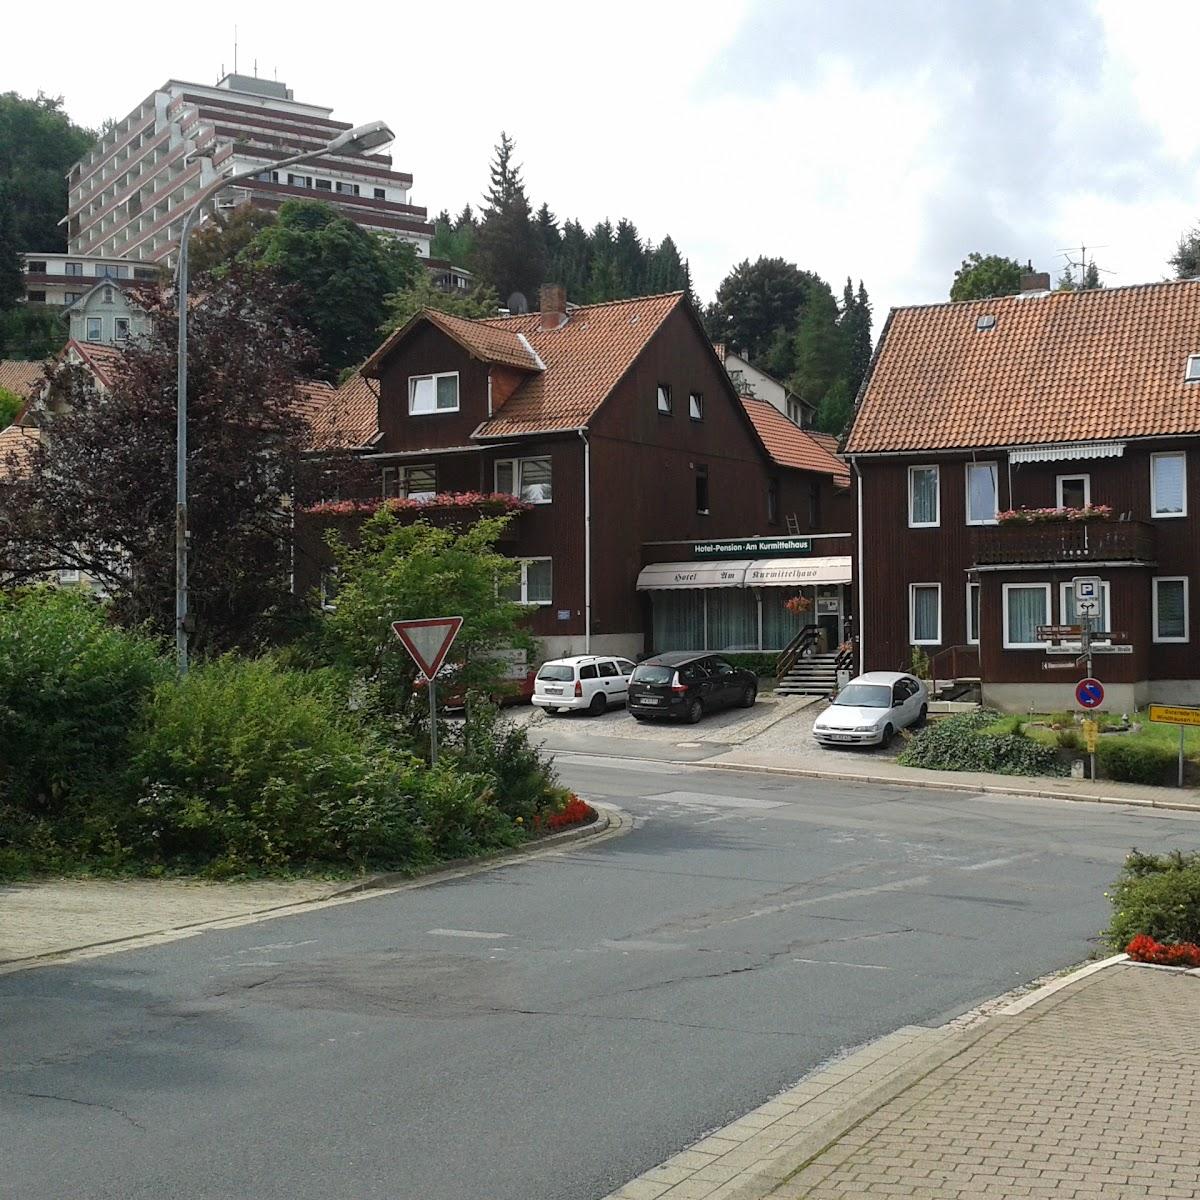 Restaurant "Hotel-Pension Am Kurmittelhaus" in Bad Grund (Harz)